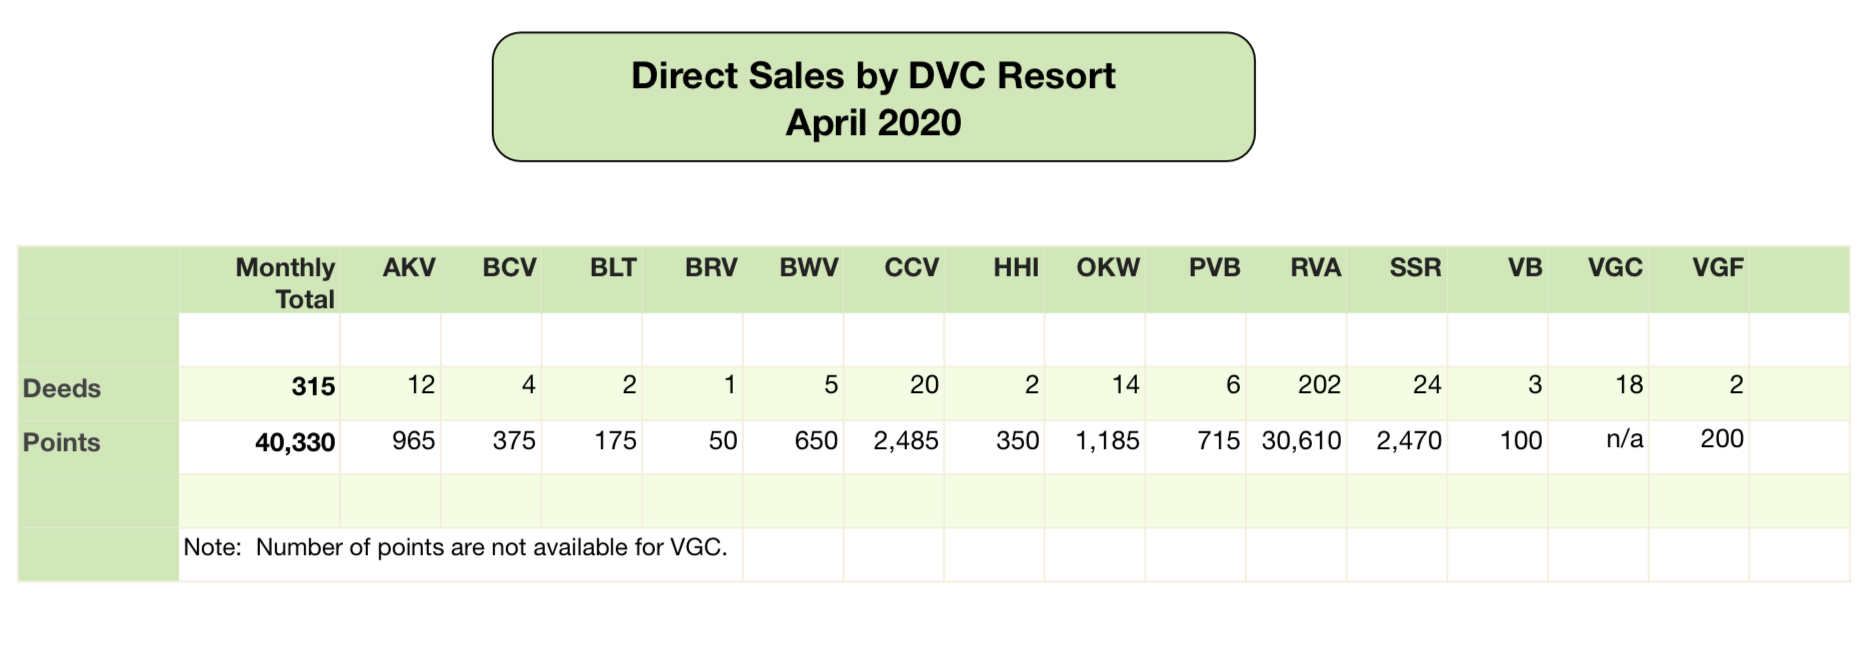 DVC Direct Sales April 2020